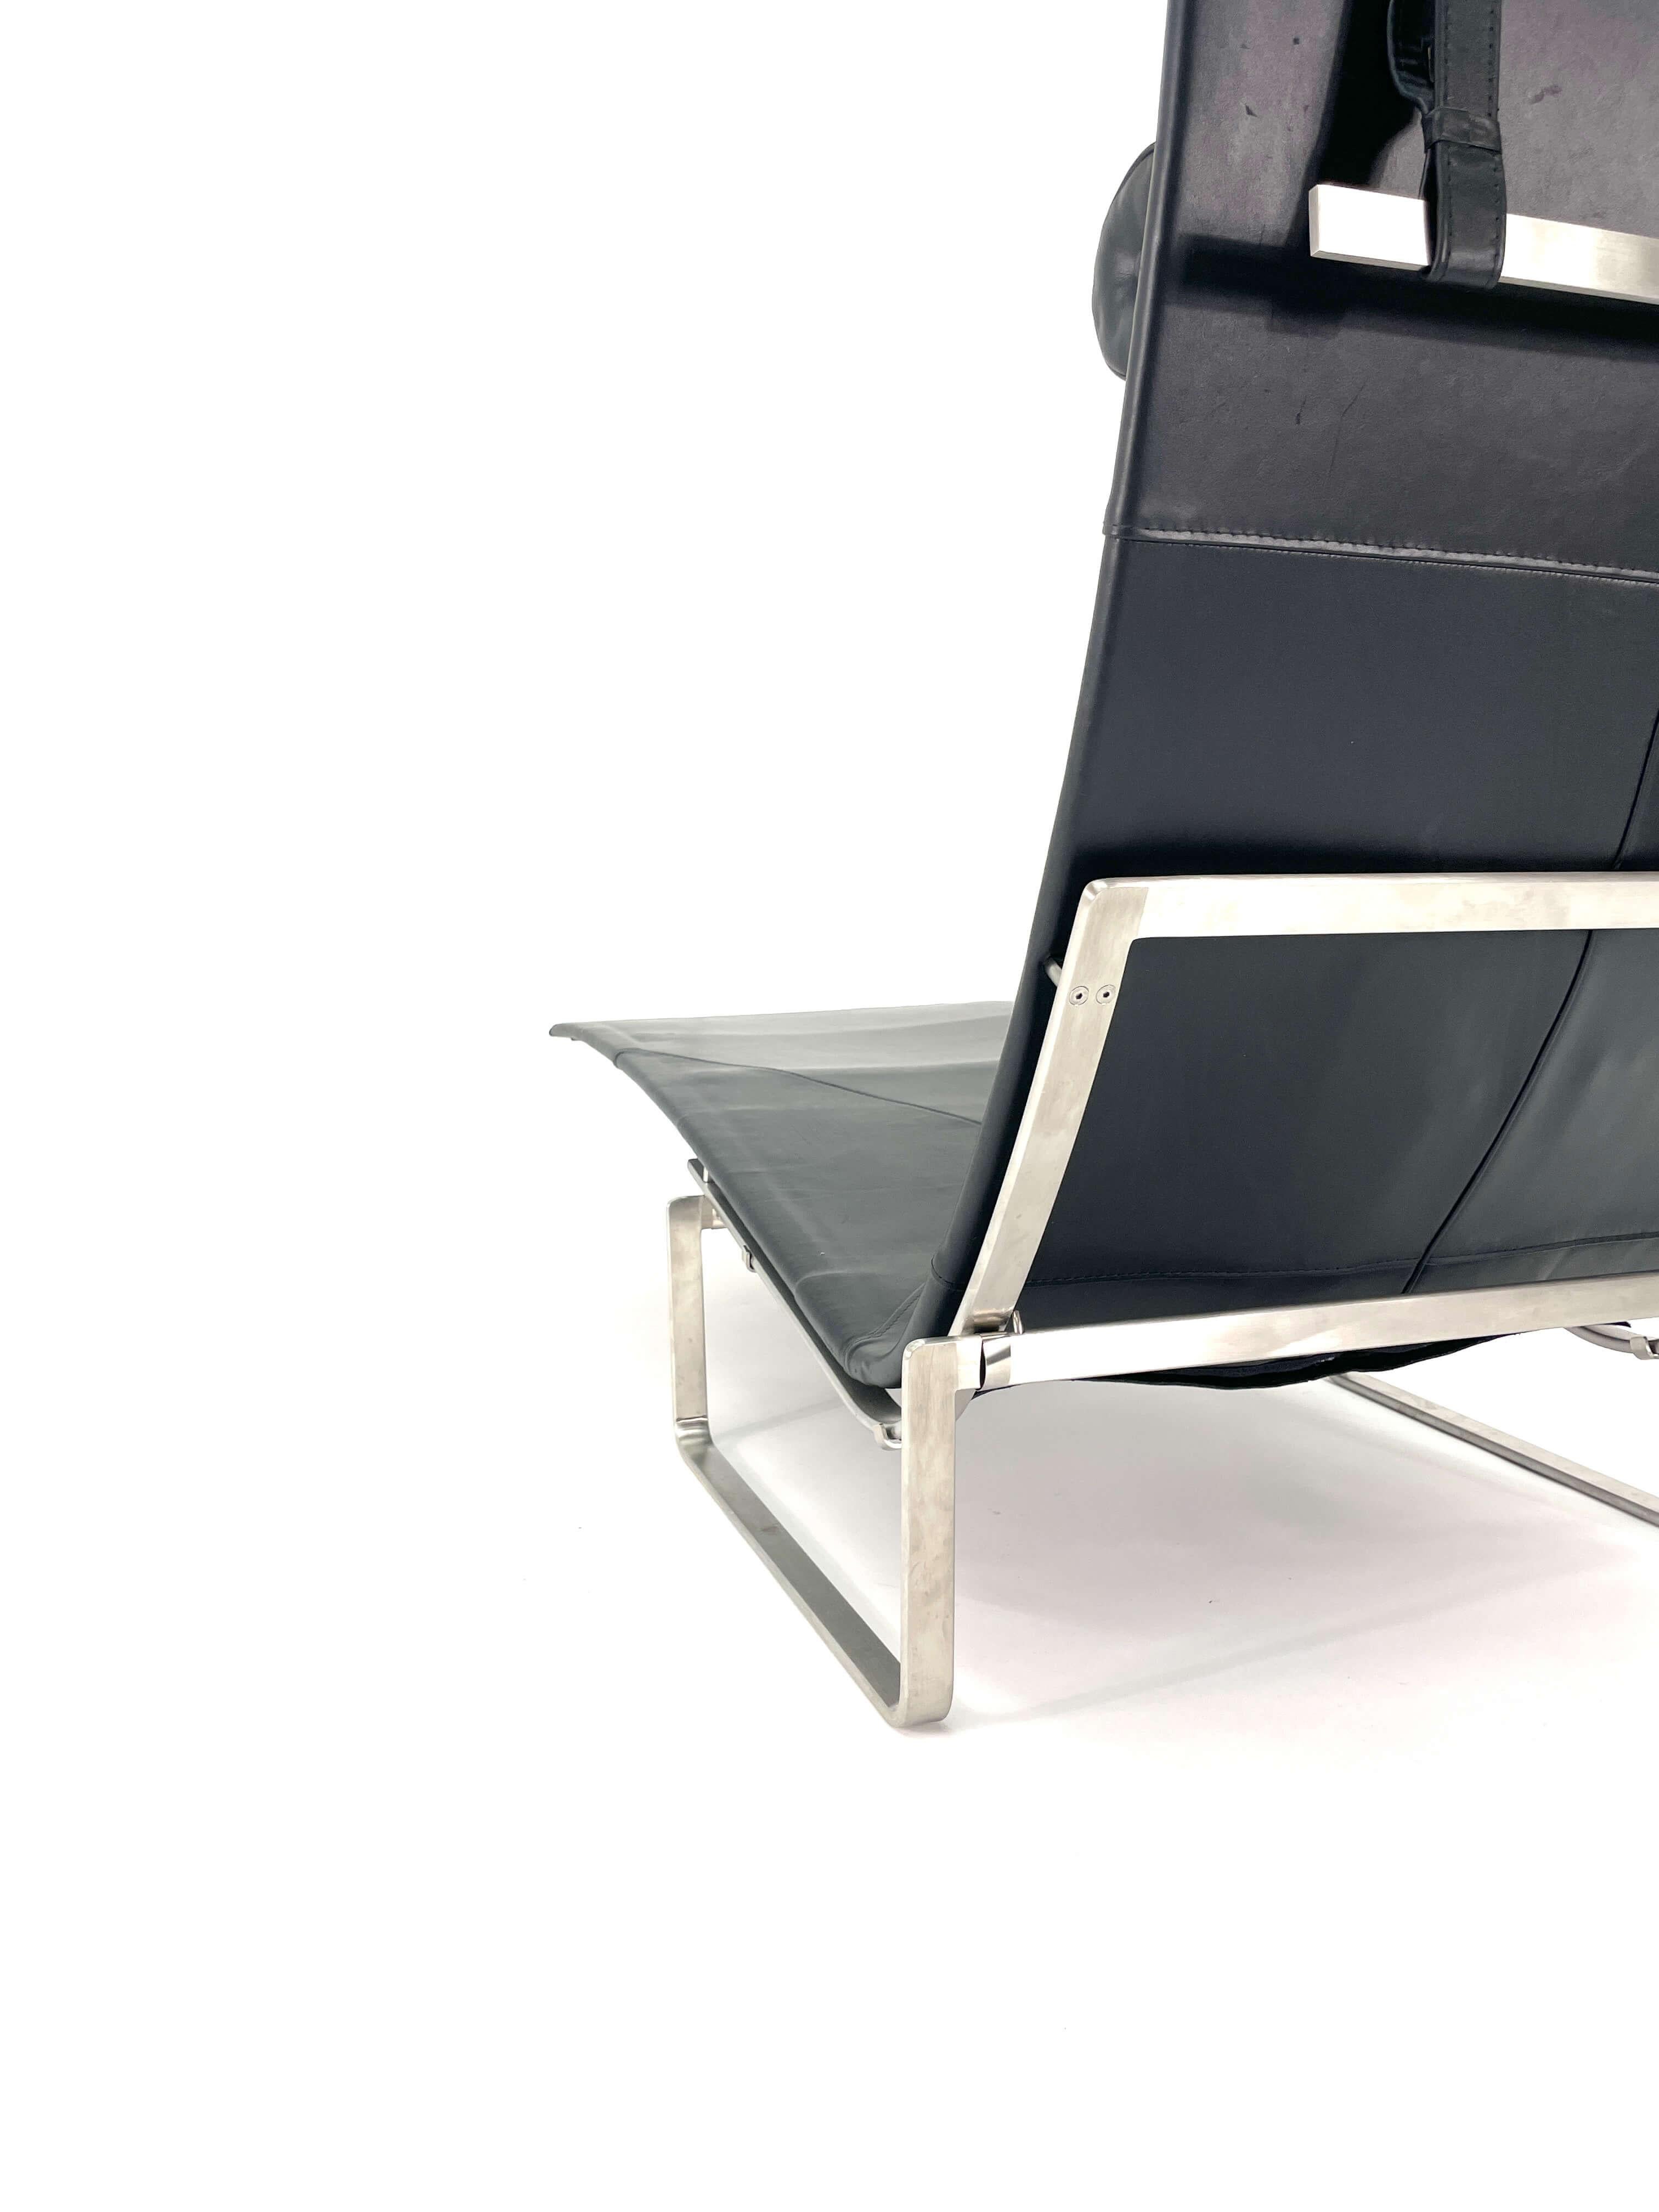 Poul Kjaerholm Chaise Lounge Model PK24 for Fritz Hansen For Sale 4